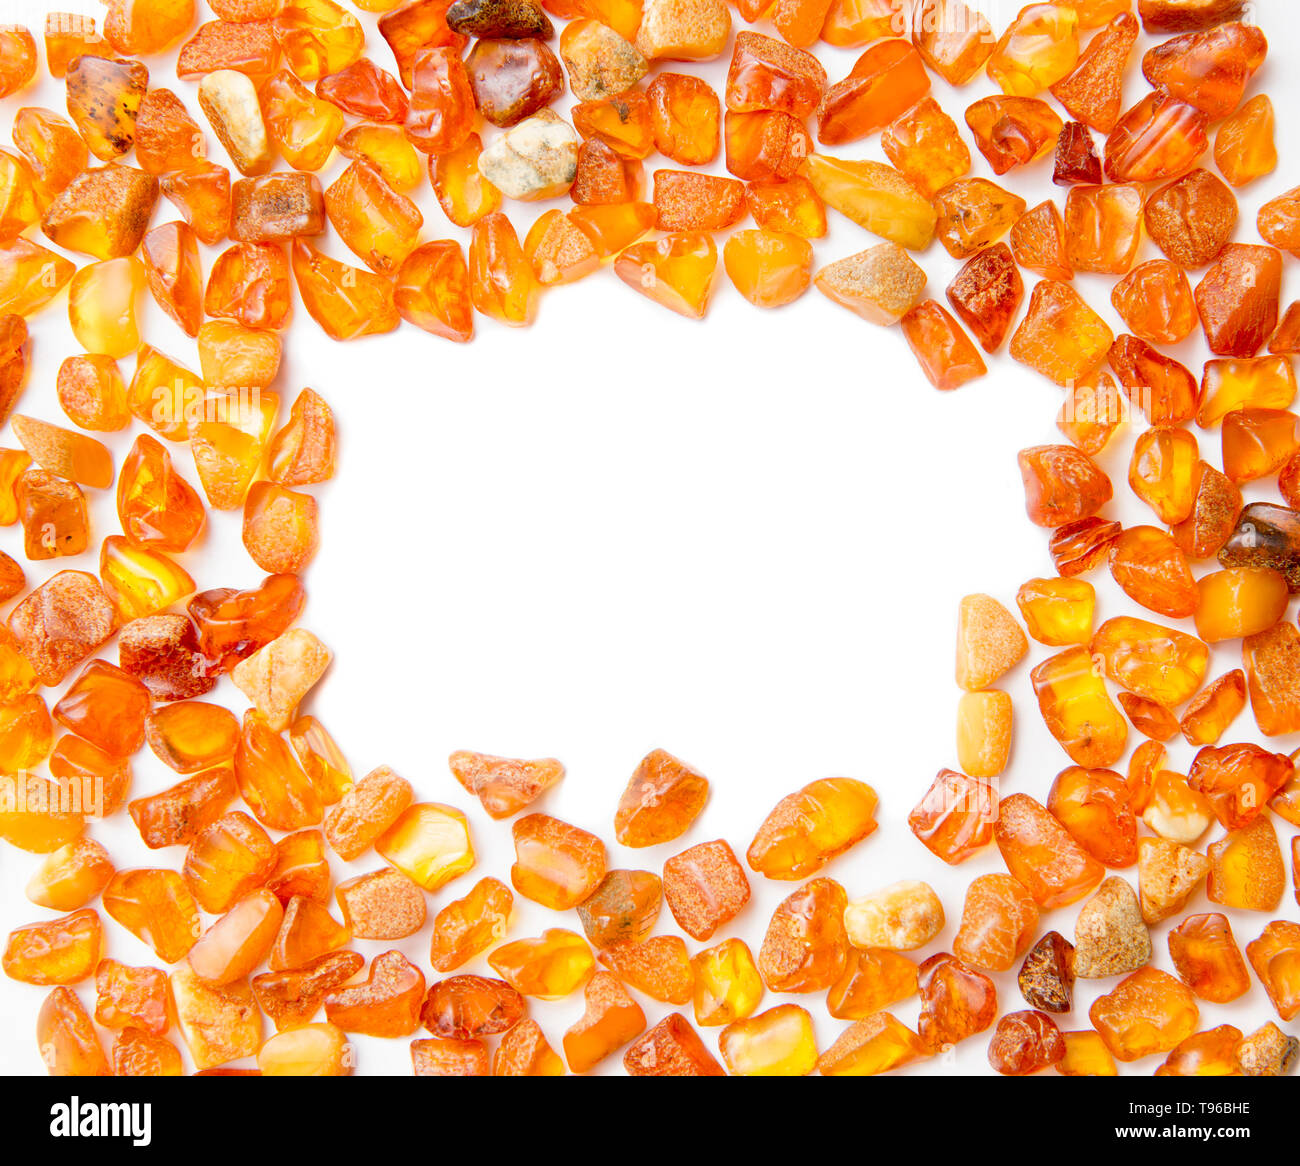 Cadre fabriqué avec les morceaux d'Ambre orange isolé sur blanc. La région de la Baltique est le plus grand gisement connu de l'ambre, l'ambre baltique appelé o Banque D'Images